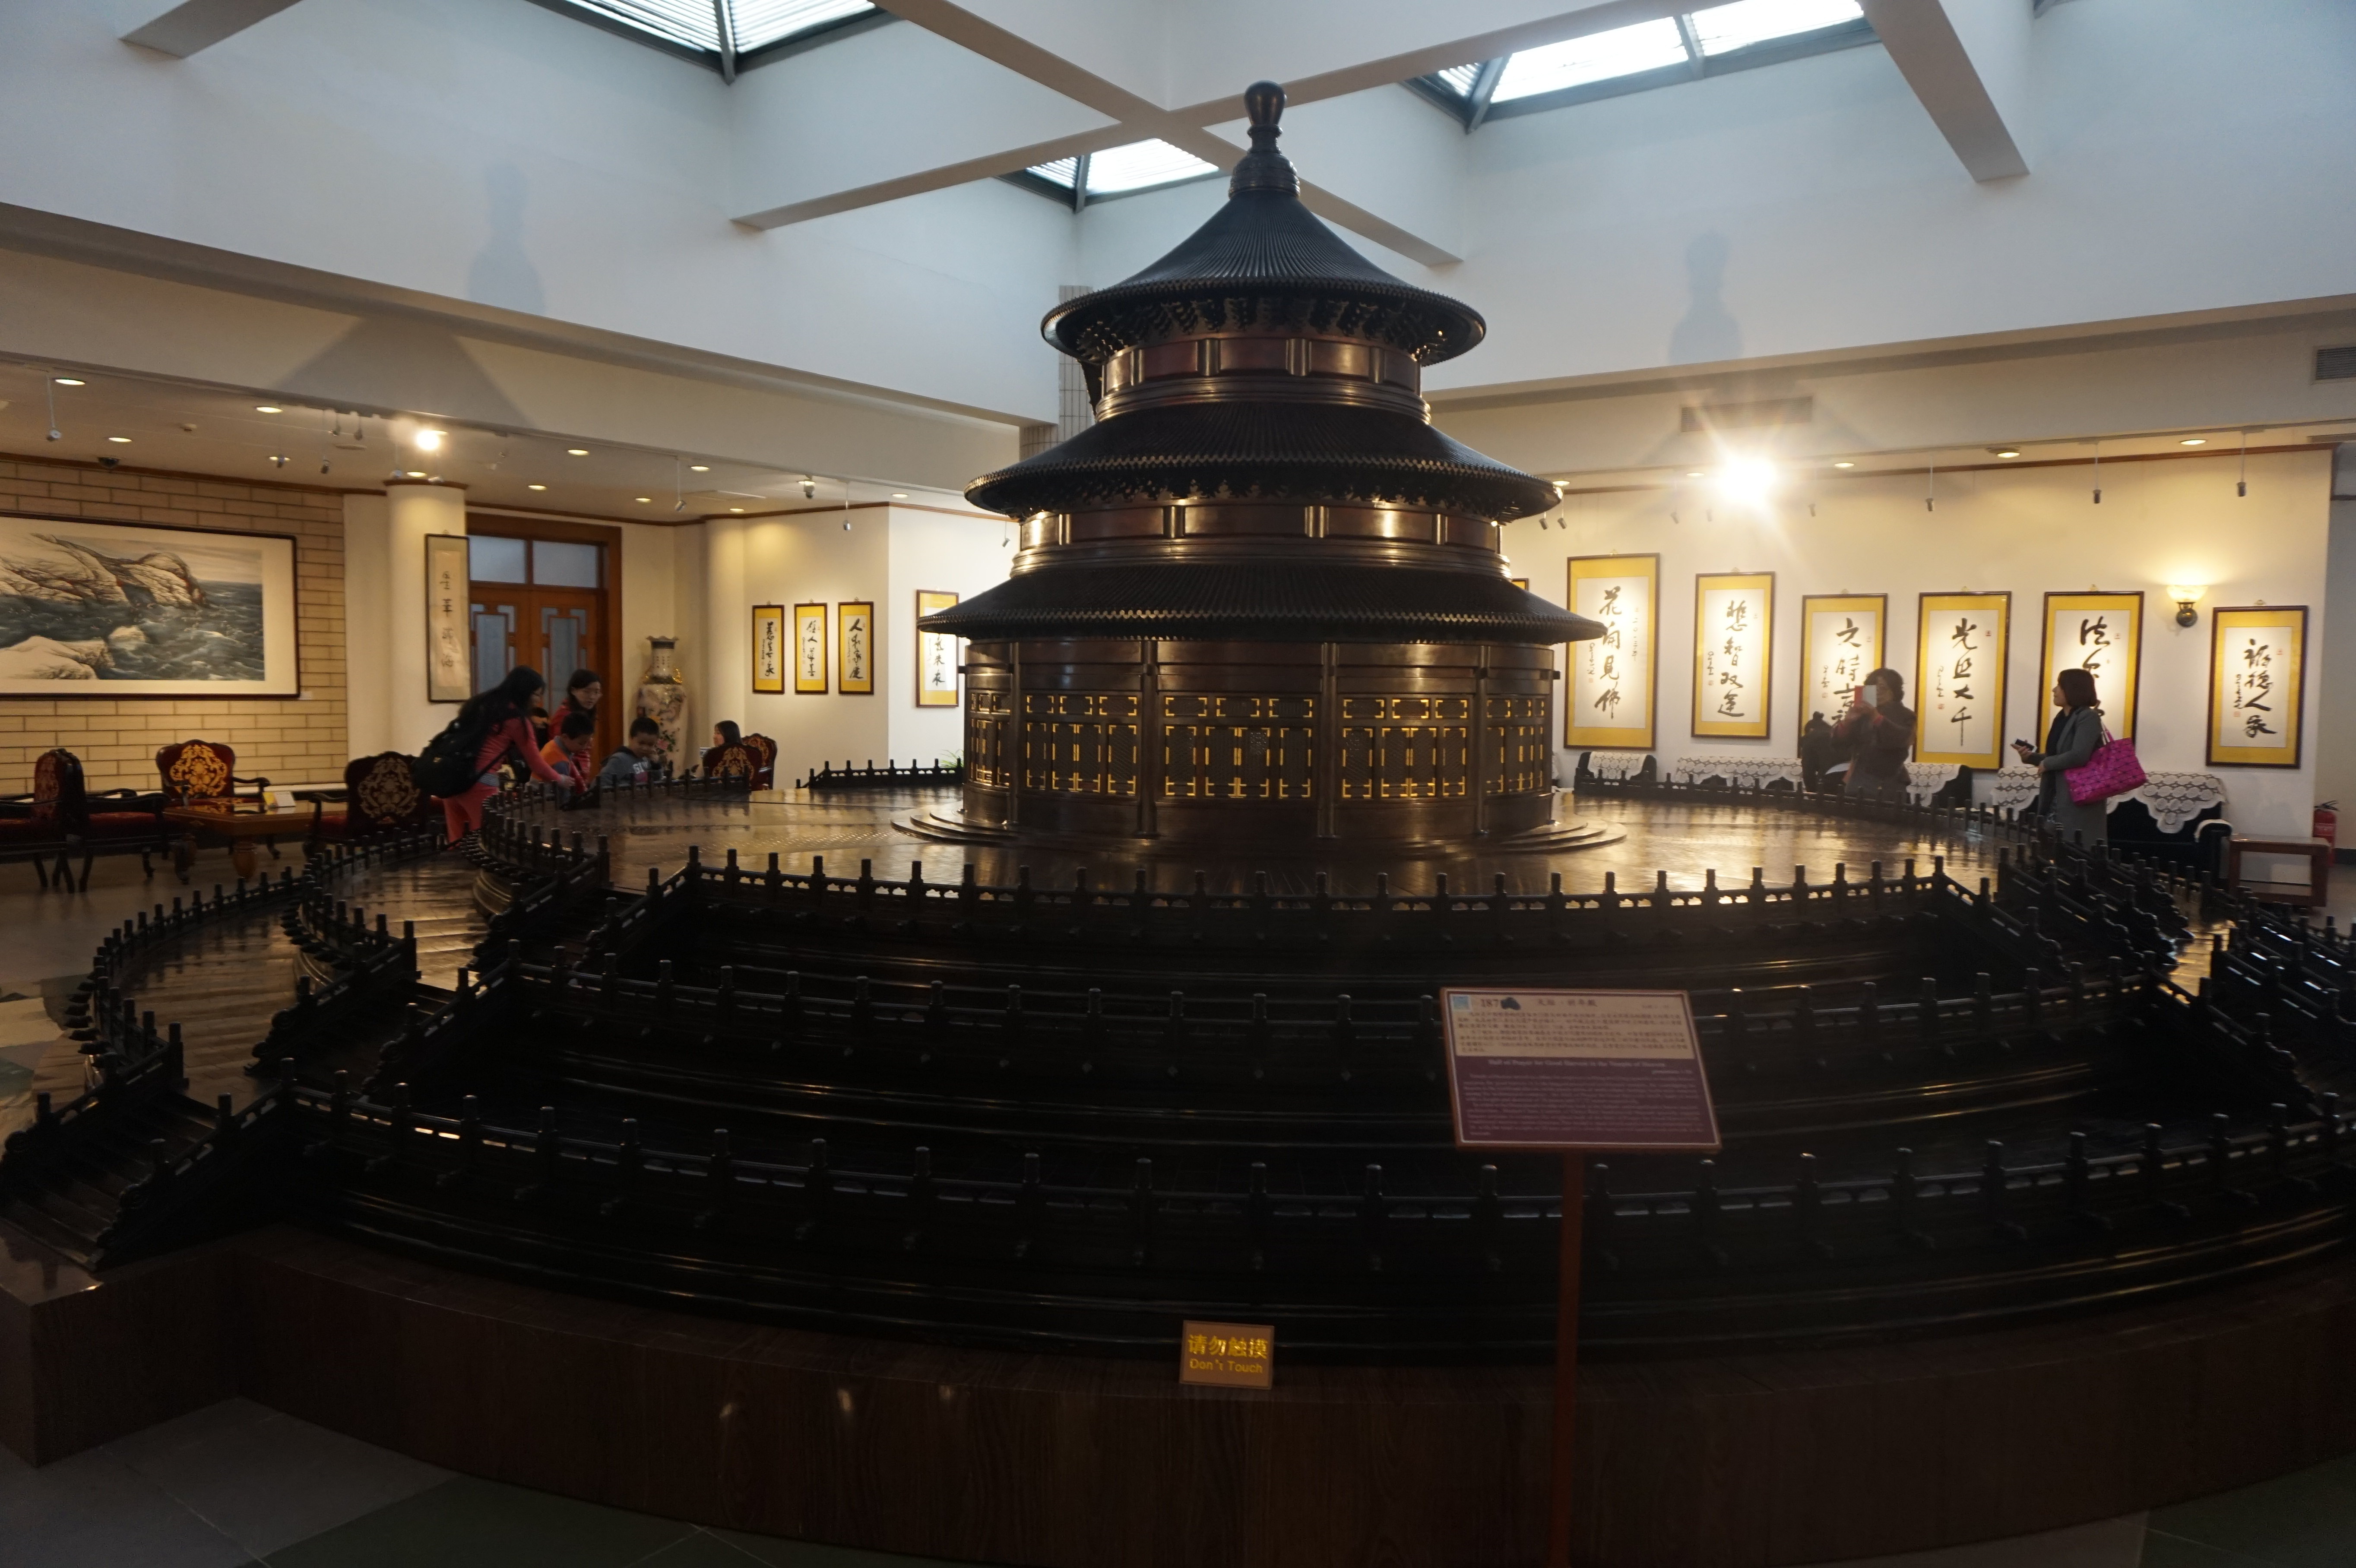 【携程攻略】北京中国紫檀博物馆景点,进入博物馆后